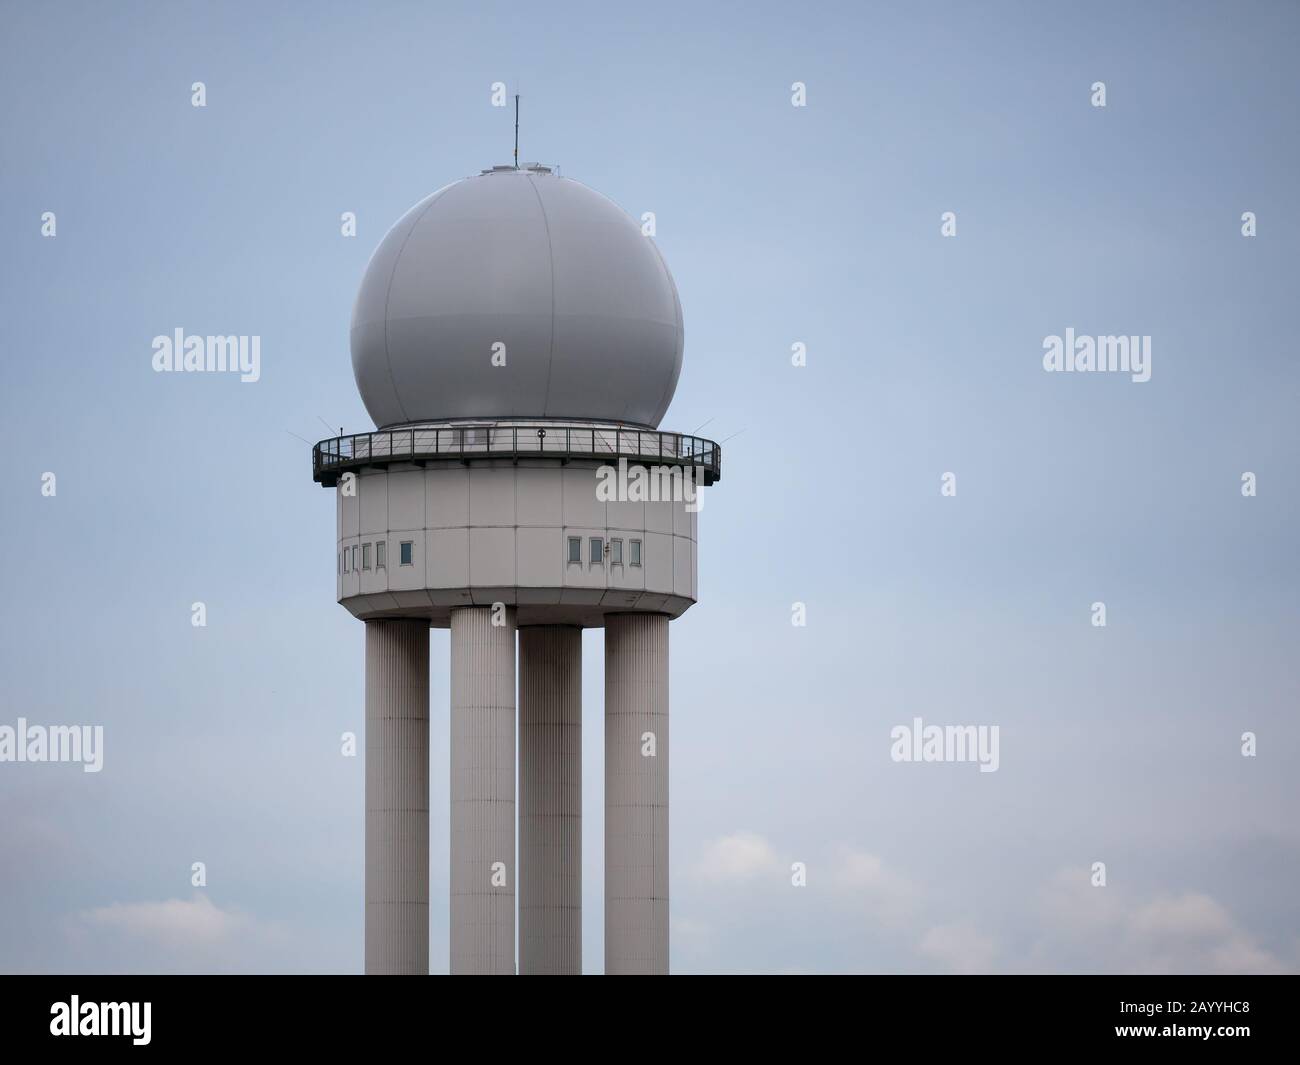 RRP 117 Radar Tower In Public City Park Tempelhofer Feld, Former Tempelhof Airport In Berlin, Germany Stock Photo